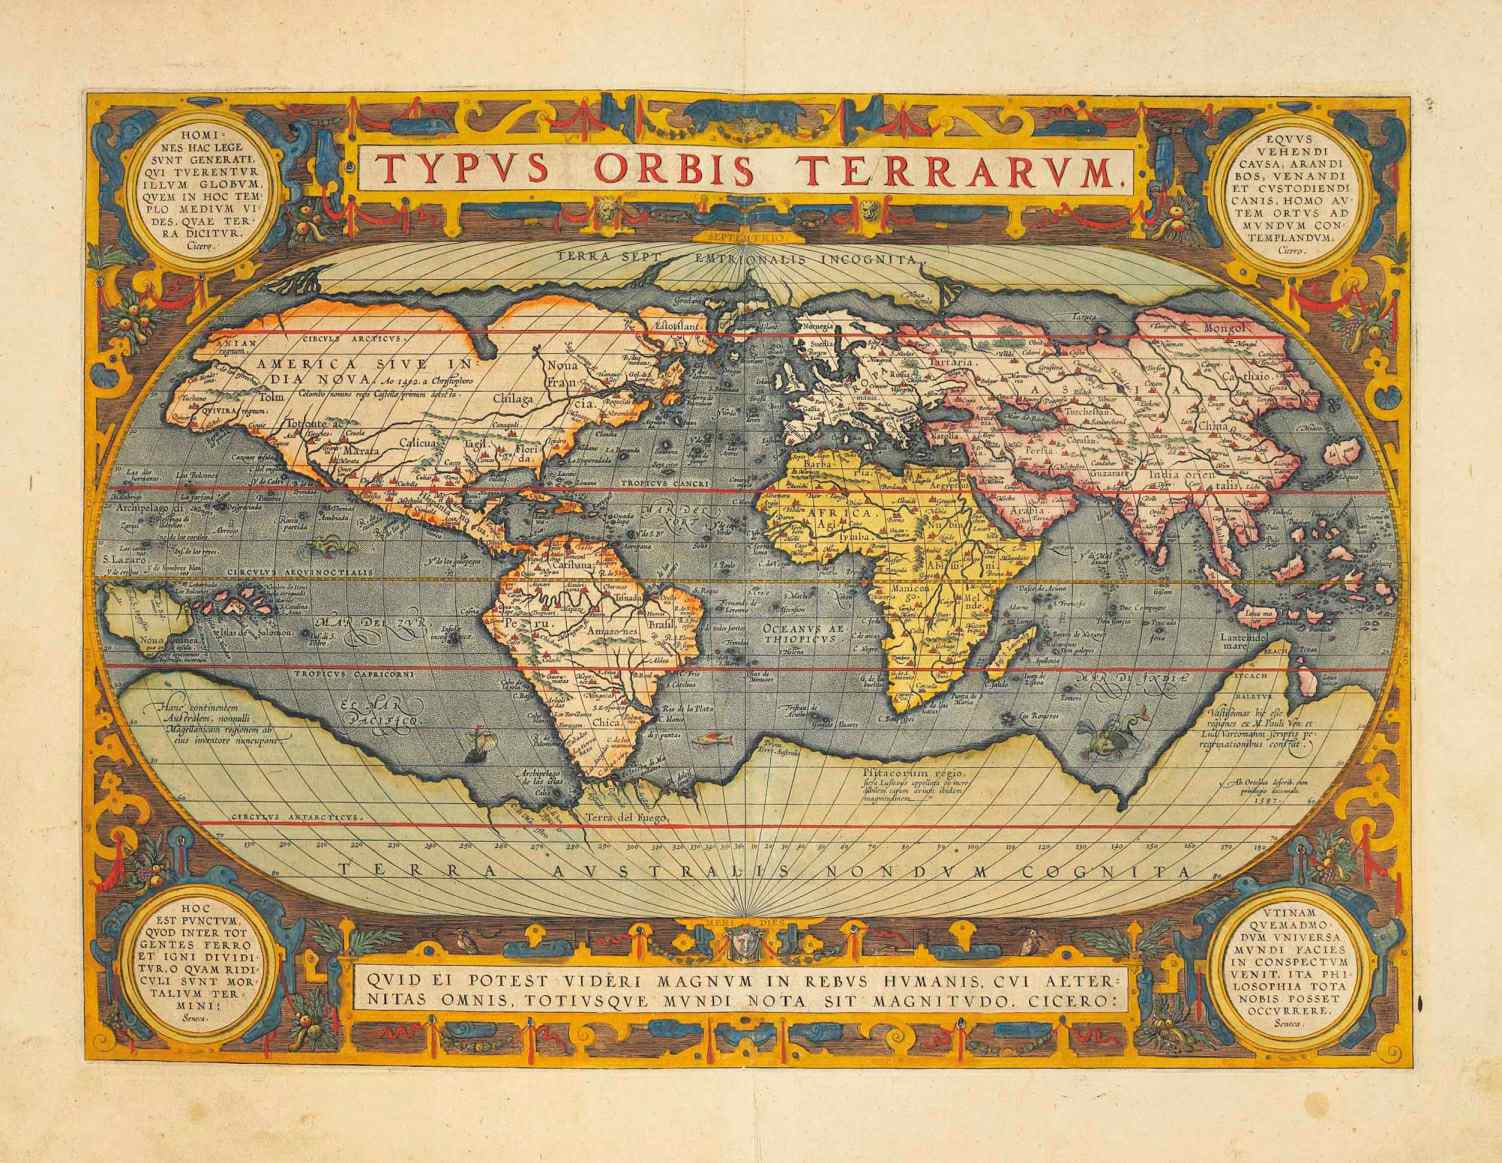 Na této mapě z roku 1570 je Hyperborea zobrazena jako arktický kontinent a je popsána jako „Terra Septemtrionalis Incognita“ (Neznámá severní země).